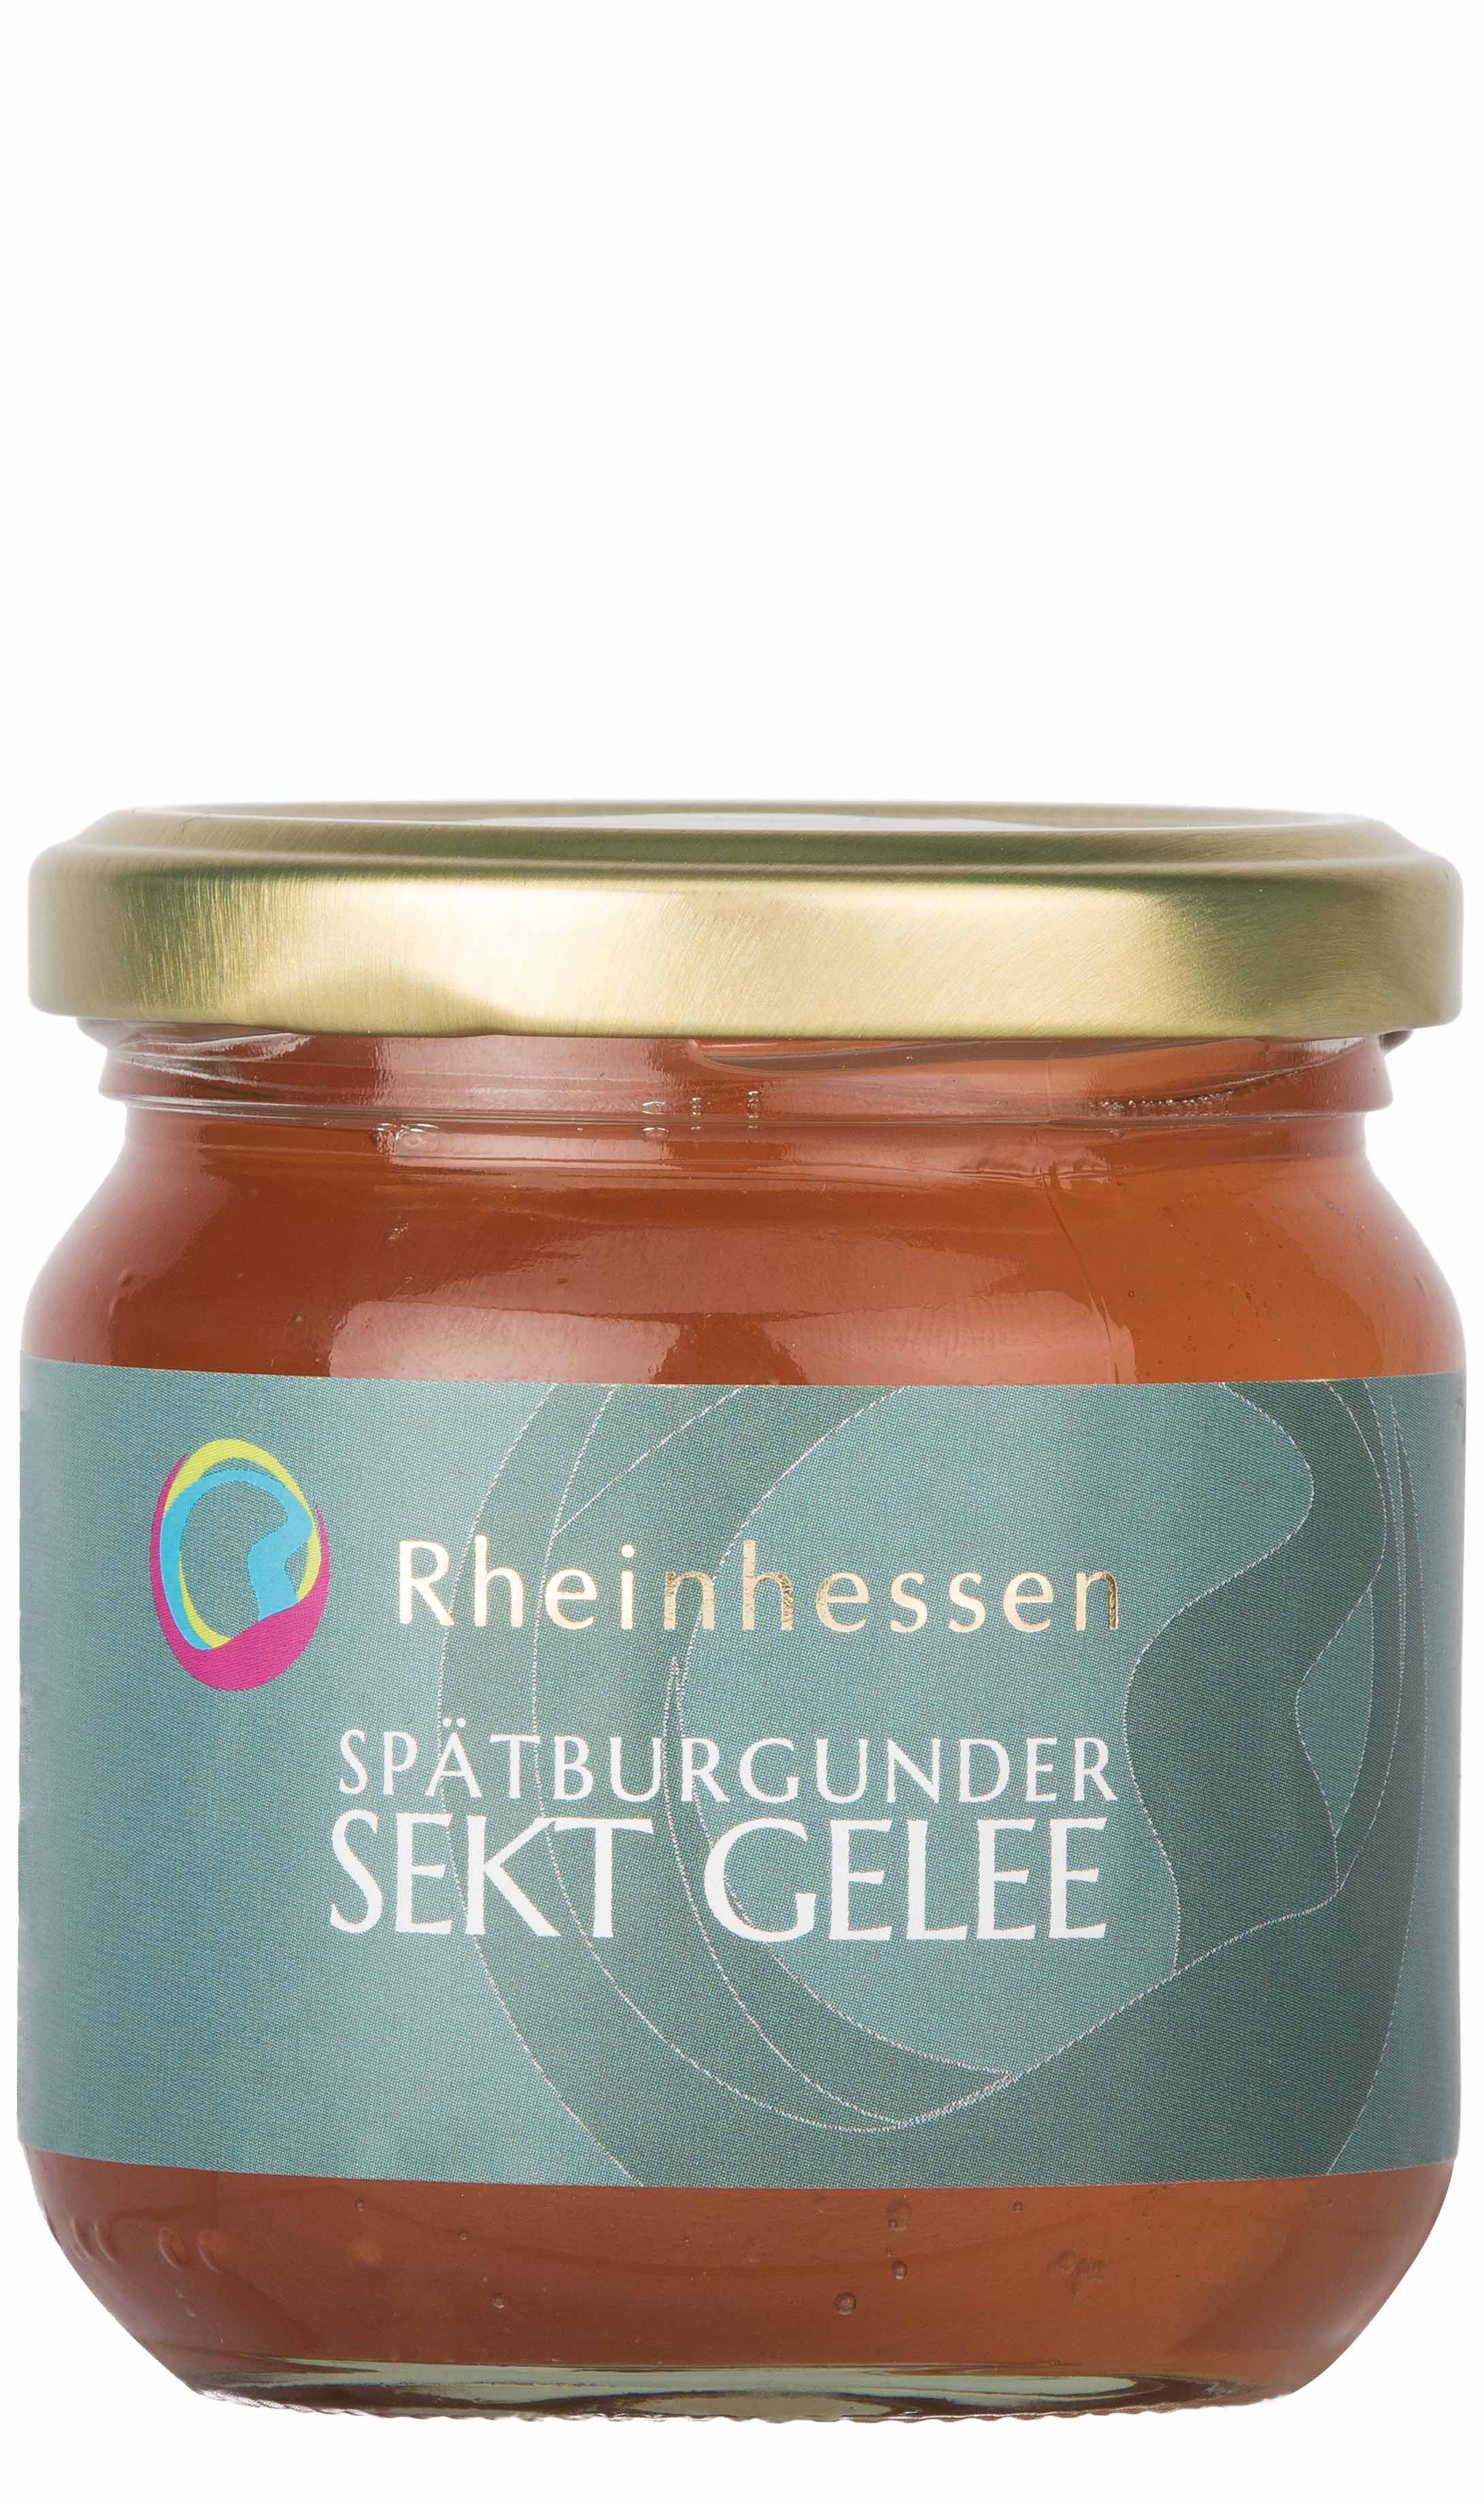 product image: Sektgelee rosé